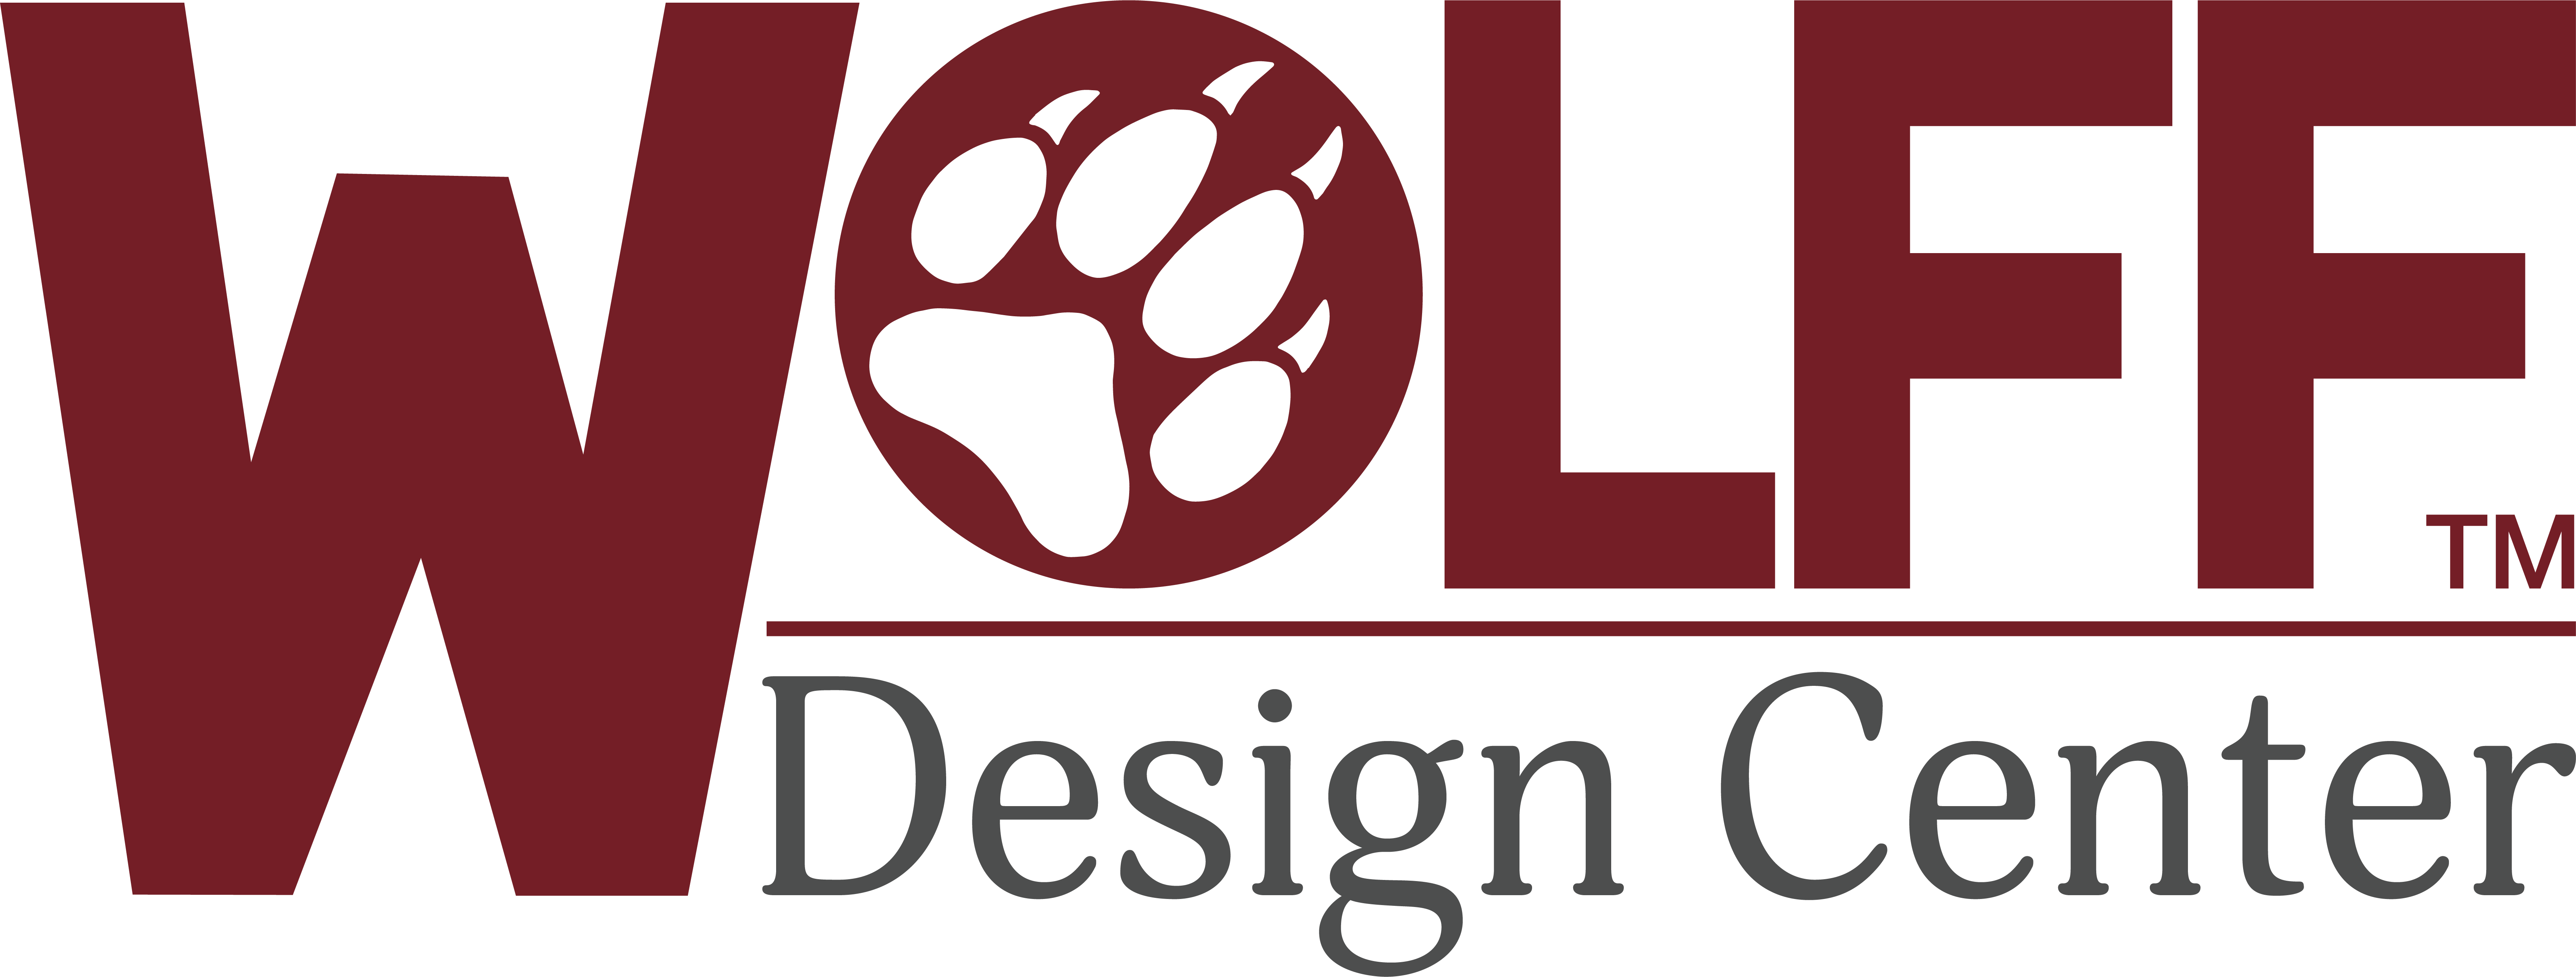 Wolff Design Center Logo